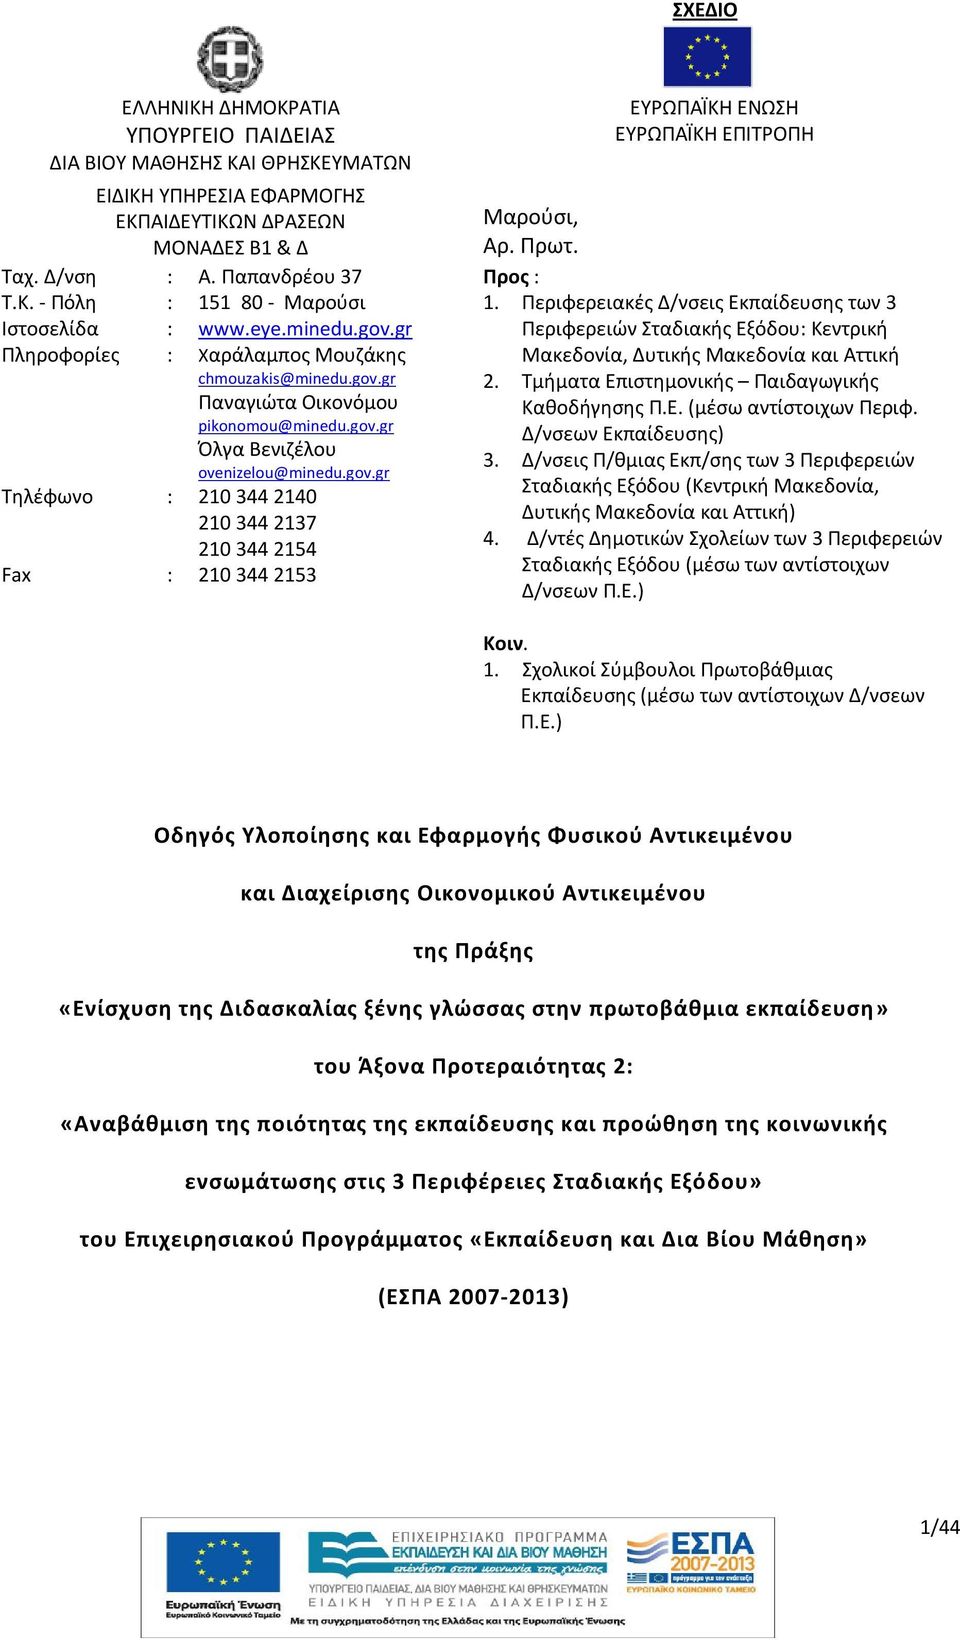 Πρωτ. Προς : 1. Περιφερειακές Δ/νσεις Εκπαίδευσης των 3 Περιφερειών Σταδιακής Εξόδου: Κεντρική Μακεδονία, Δυτικής Μακεδονία και Αττική 2. Τμήματα Επιστημονικής Παιδαγωγικής Καθοδήγησης Π.Ε. (μέσω αντίστοιχων Περιφ.